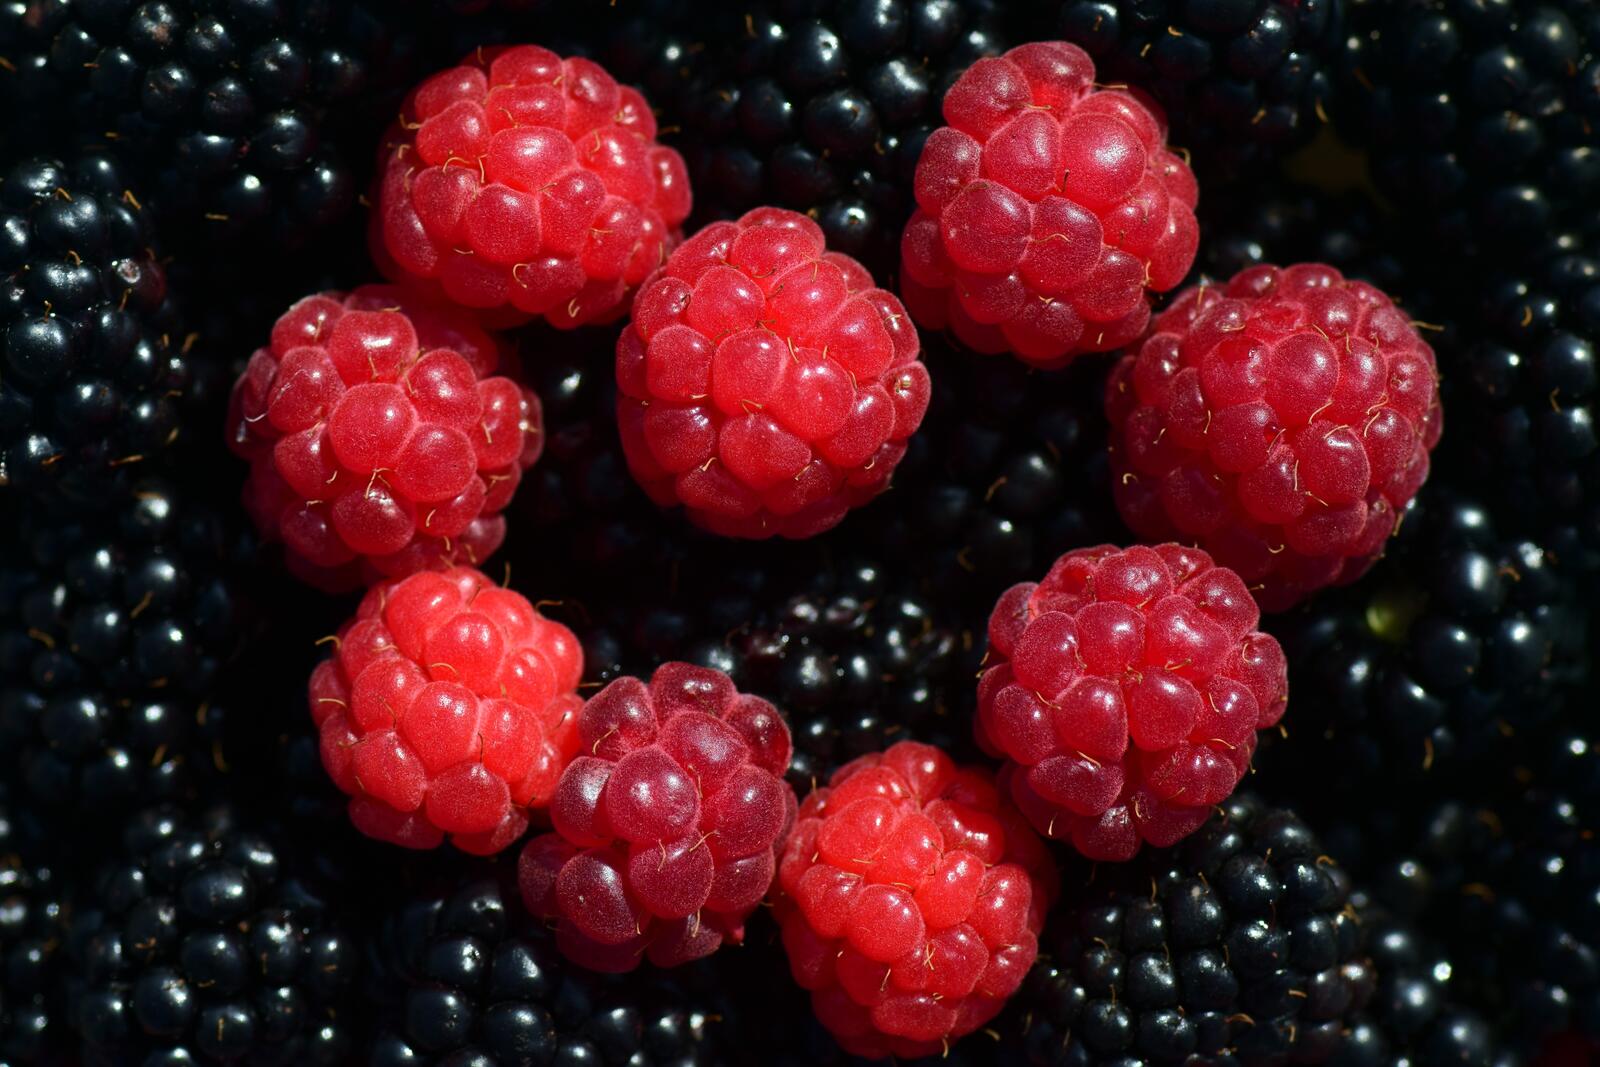 Wallpapers blackberries fruits raspberries on the desktop